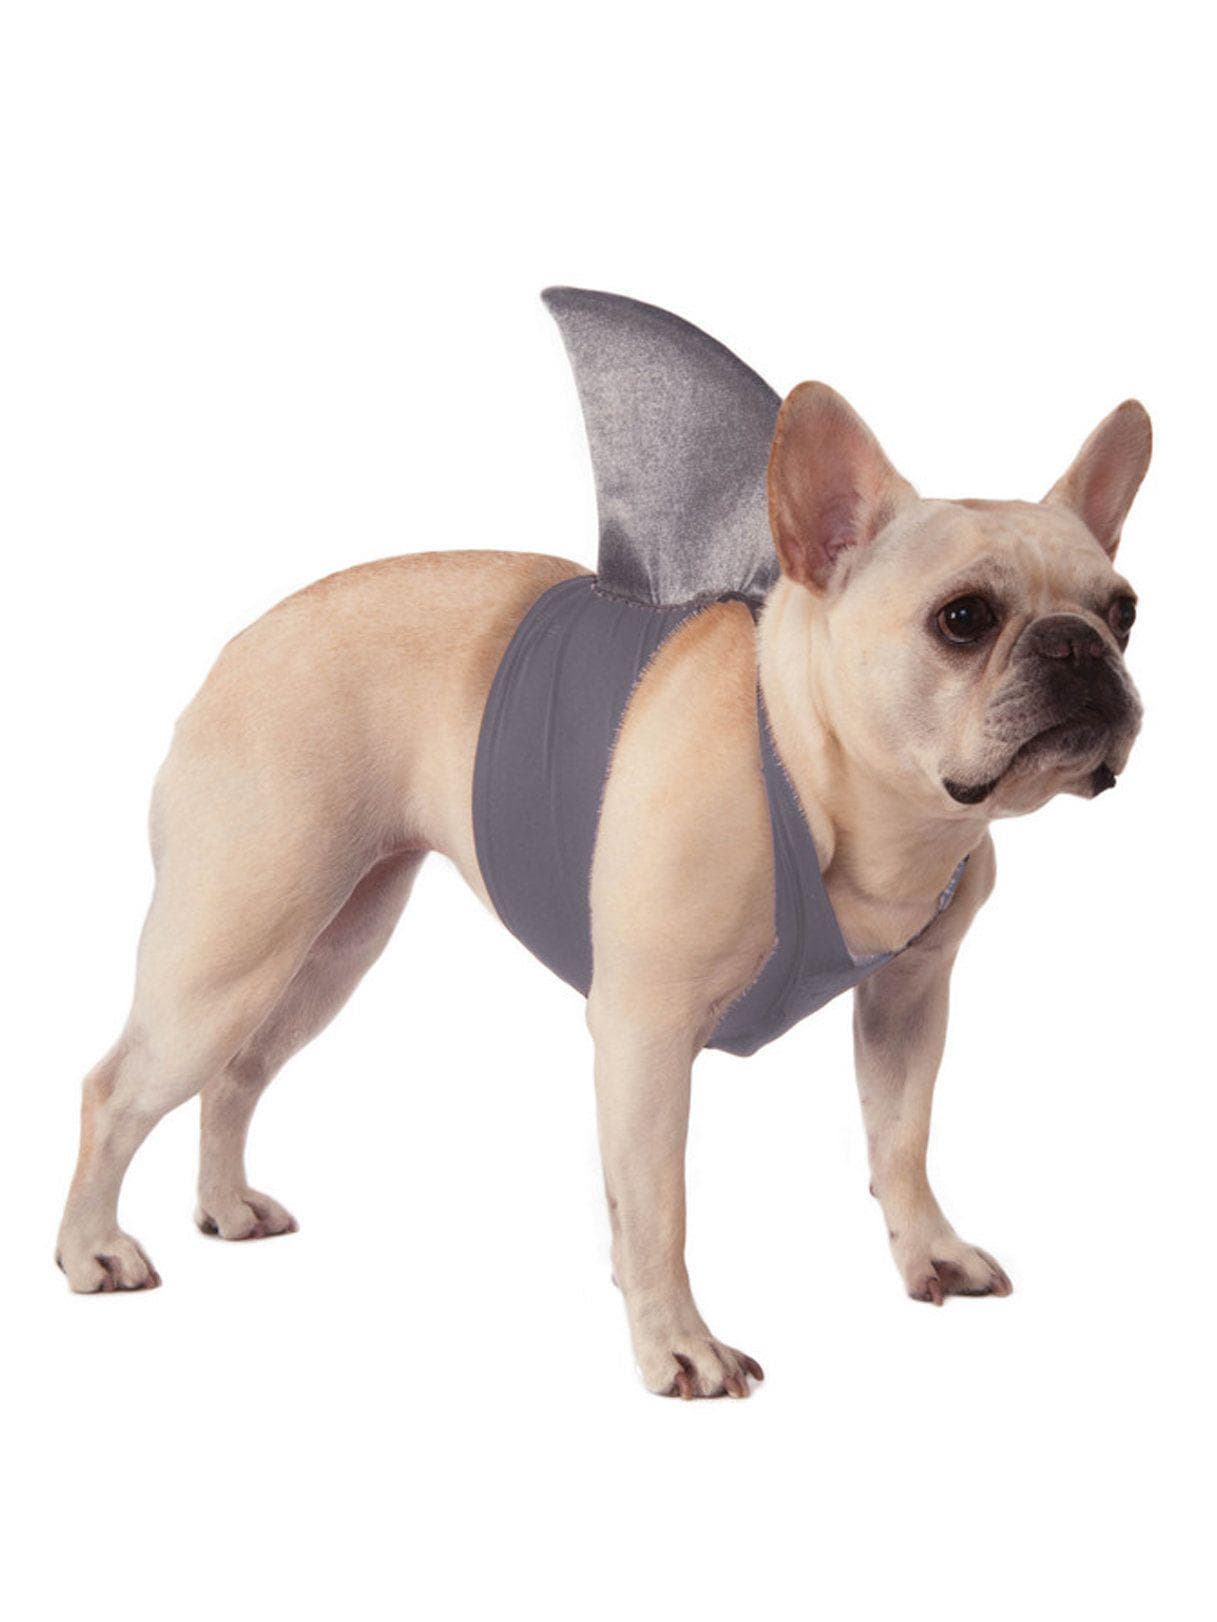 Shark Fin Pet Accessory - costumes.com